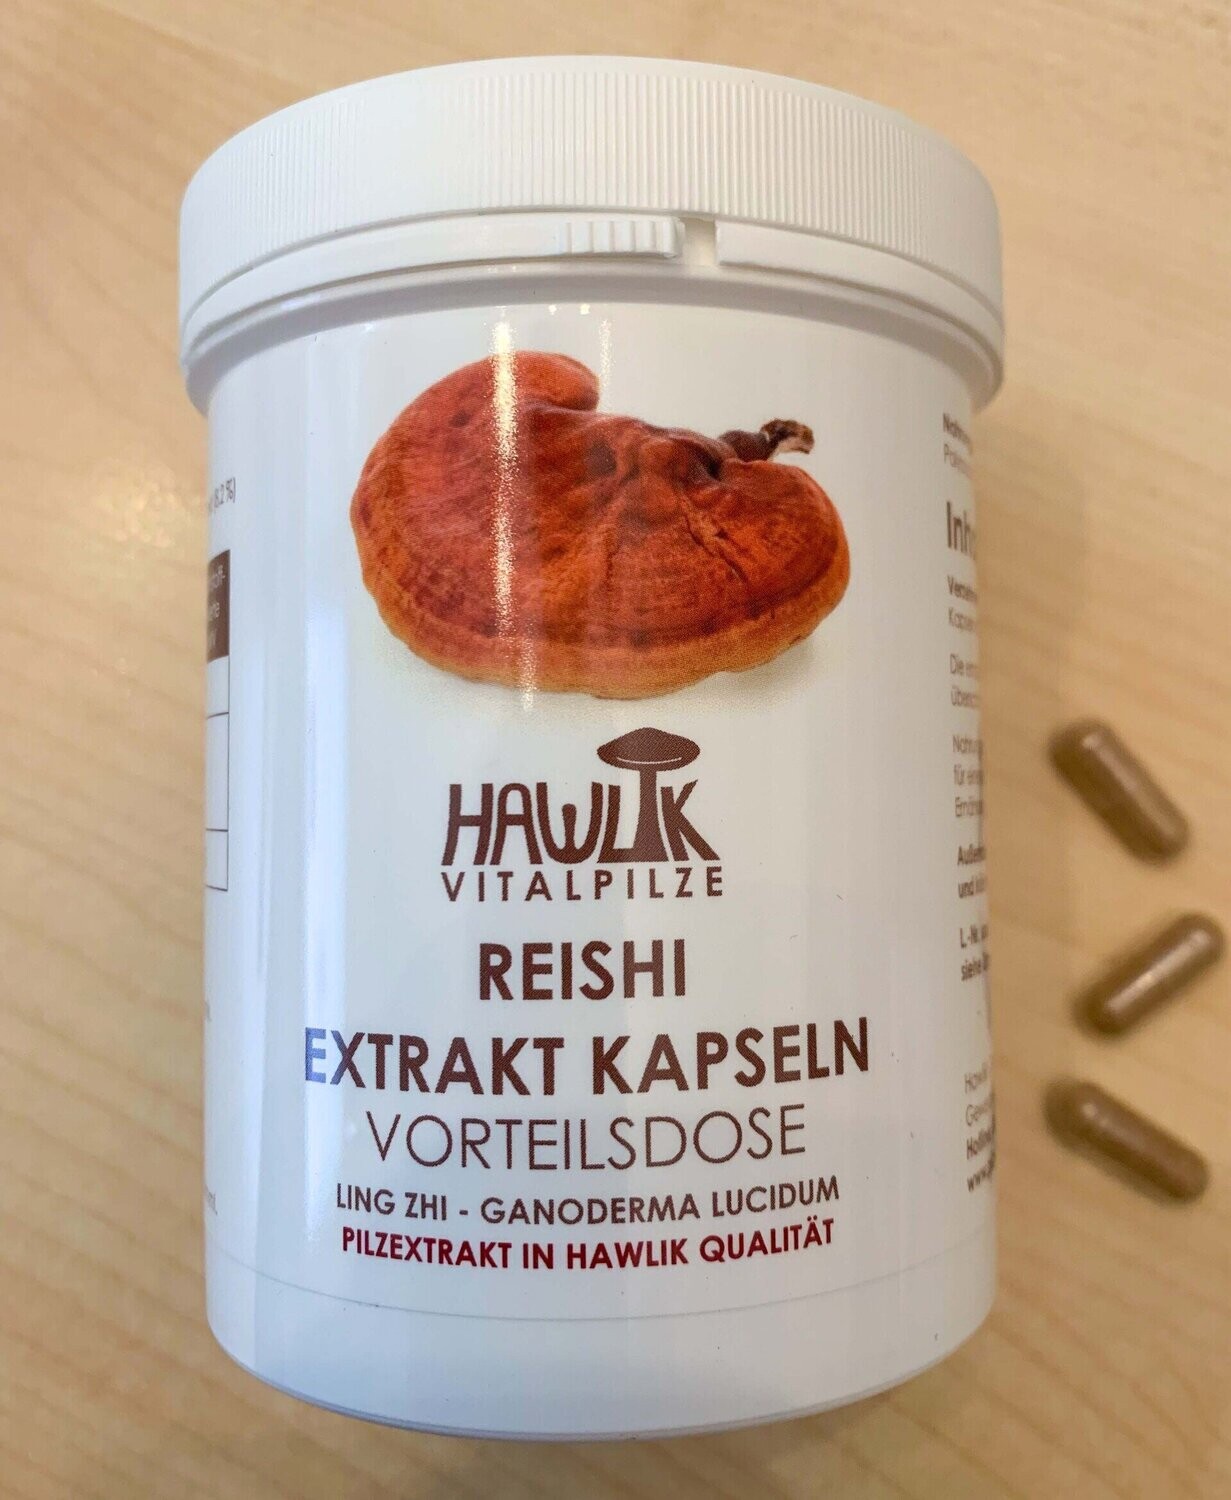 Reishi Extrakt Kapseln in der Vorteilsdose (240 Kapseln)